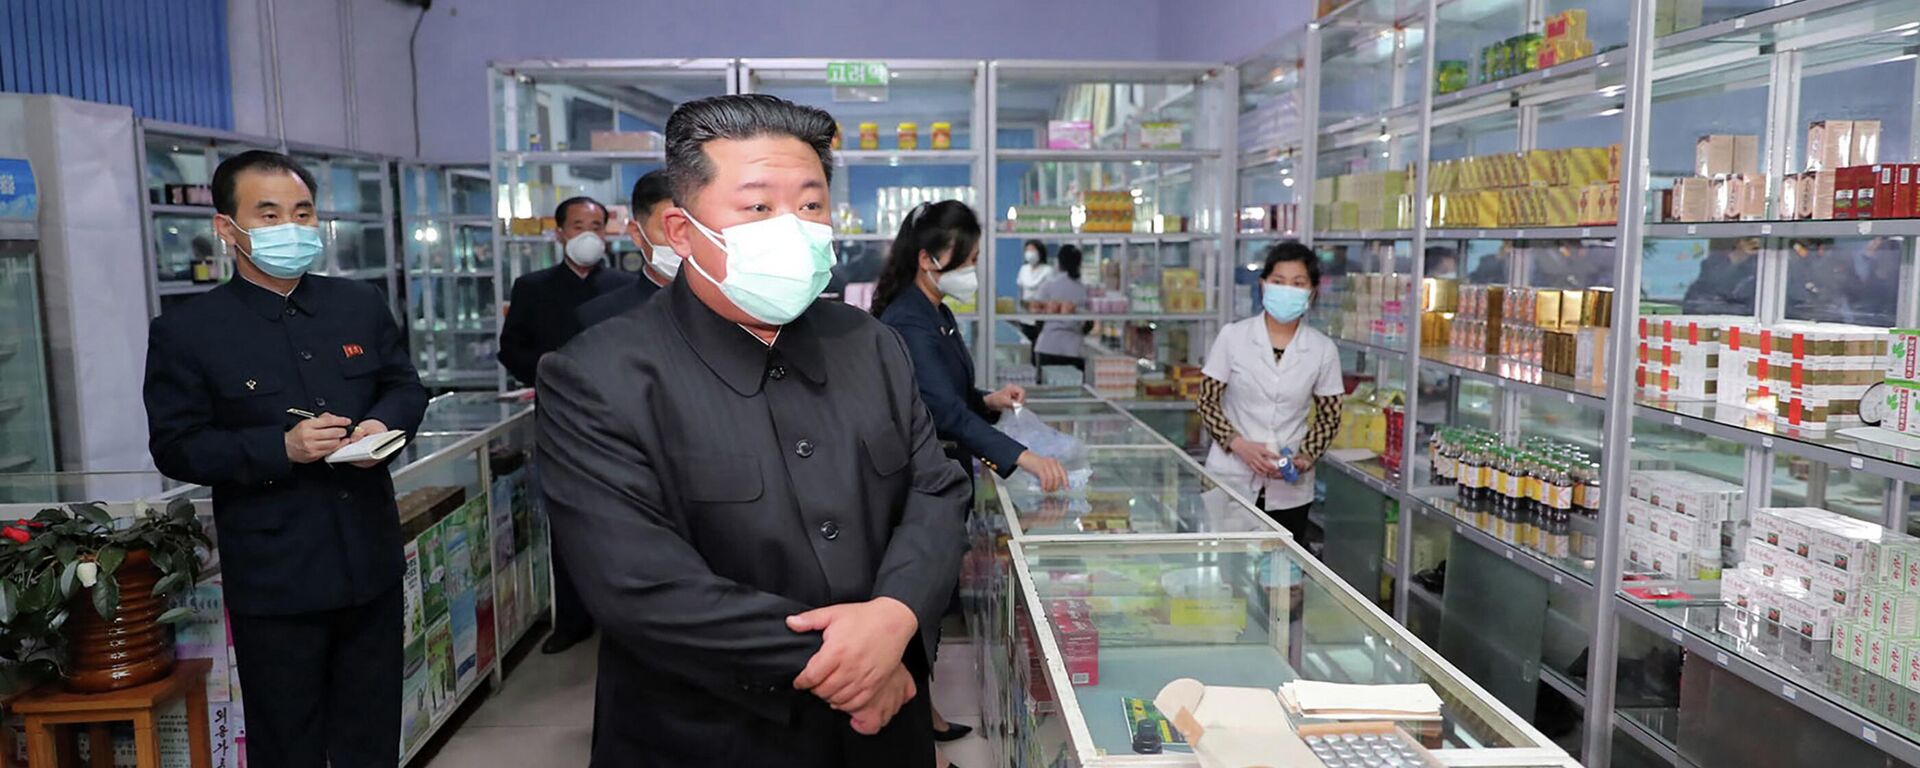 ارتفاع عدد حالات الإصابة بفيروس كورونا في بيونغ يانغ، كوريا الشمالية 15 مايو 2022 - سبوتنيك عربي, 1920, 19.05.2022